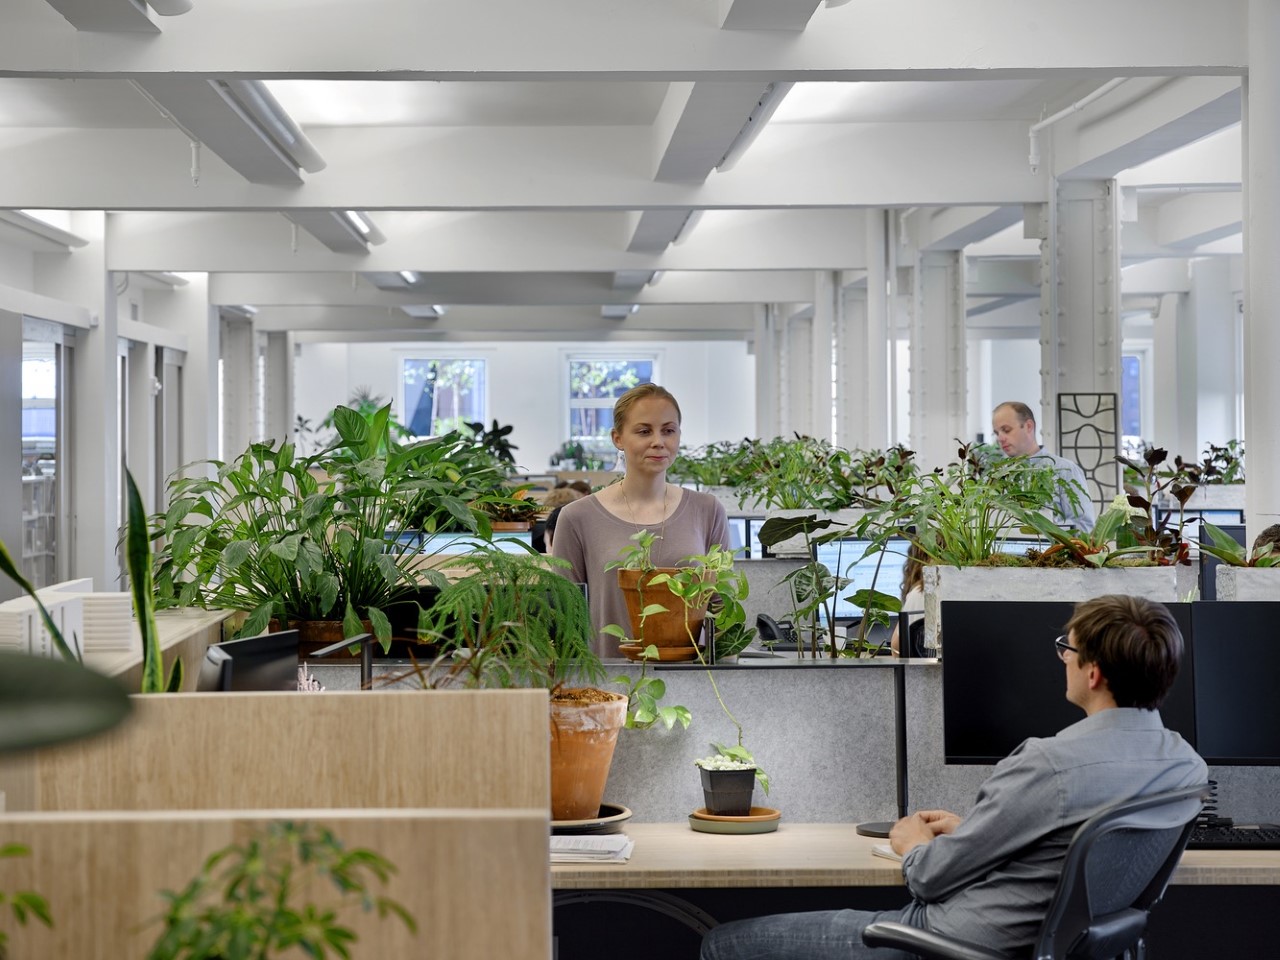 Biyofilik ofis sağlık, verimlilik ve doğaya bağlantı için tasarlanmıştır